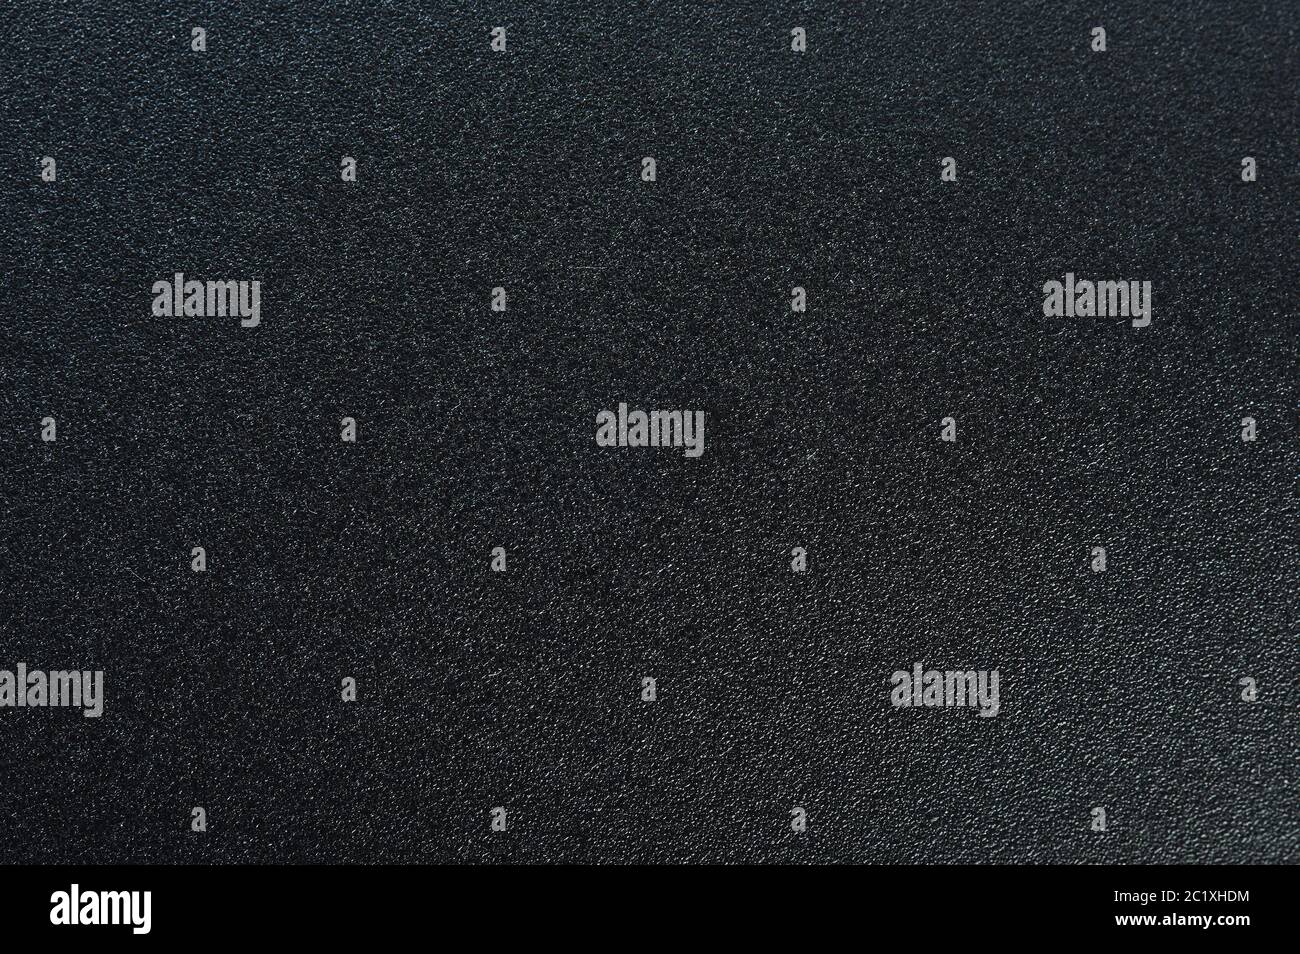 Foglio opaco immagini e fotografie stock ad alta risoluzione - Alamy